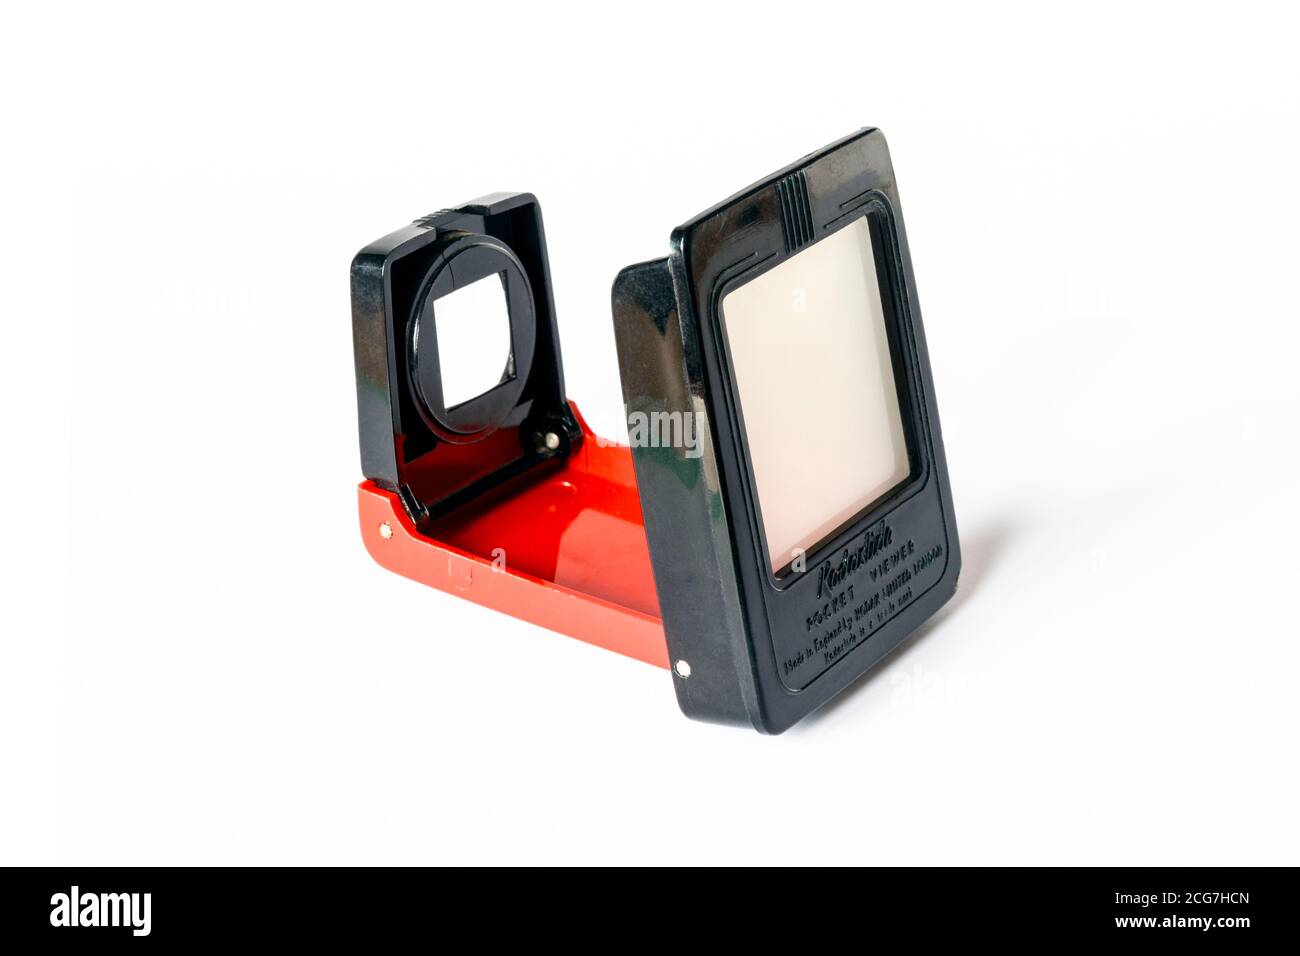 Ein Jahr1960s Kodaslide Pocket Viewer, hergestellt in England von Kodak, ein Tageslichtbetrachter für montierte 35-mm-Dias, der sich bei Nichtgebrauch flach falten lässt Stockfoto